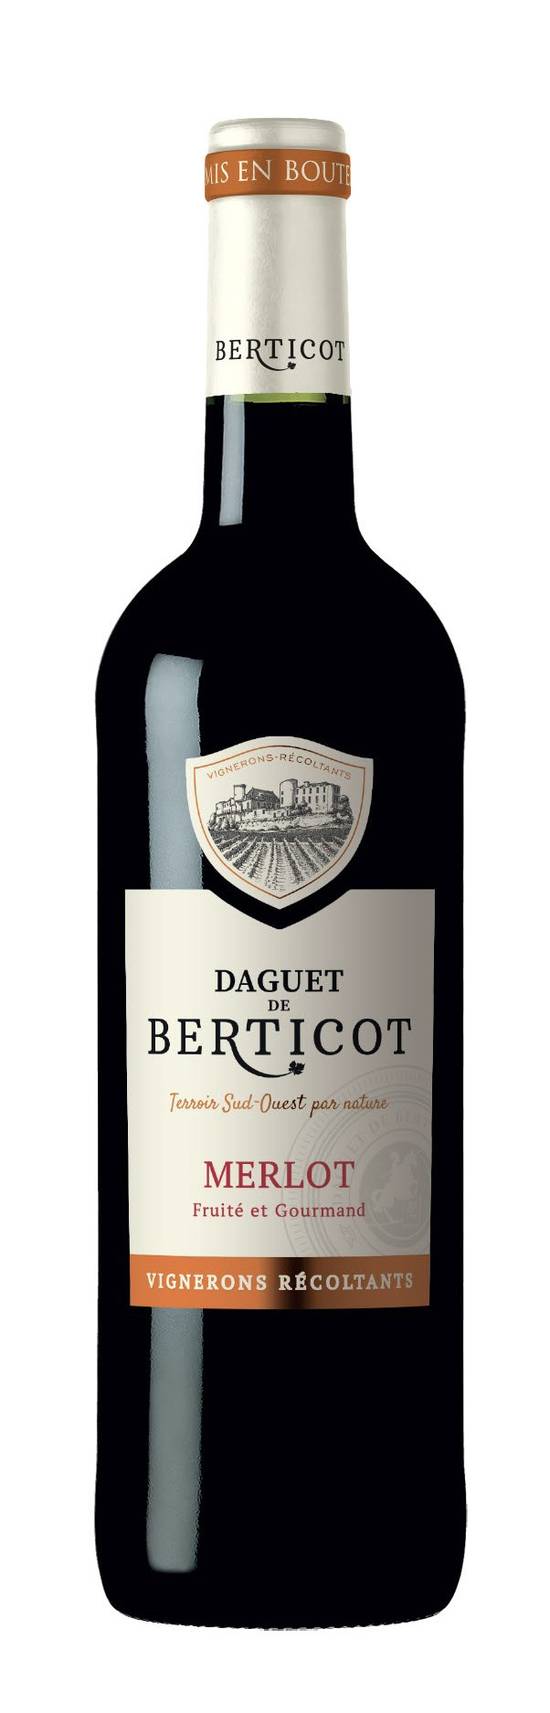 Daguet de Berticot - Vin rouge d'atlantique merlot igp(750 ml)